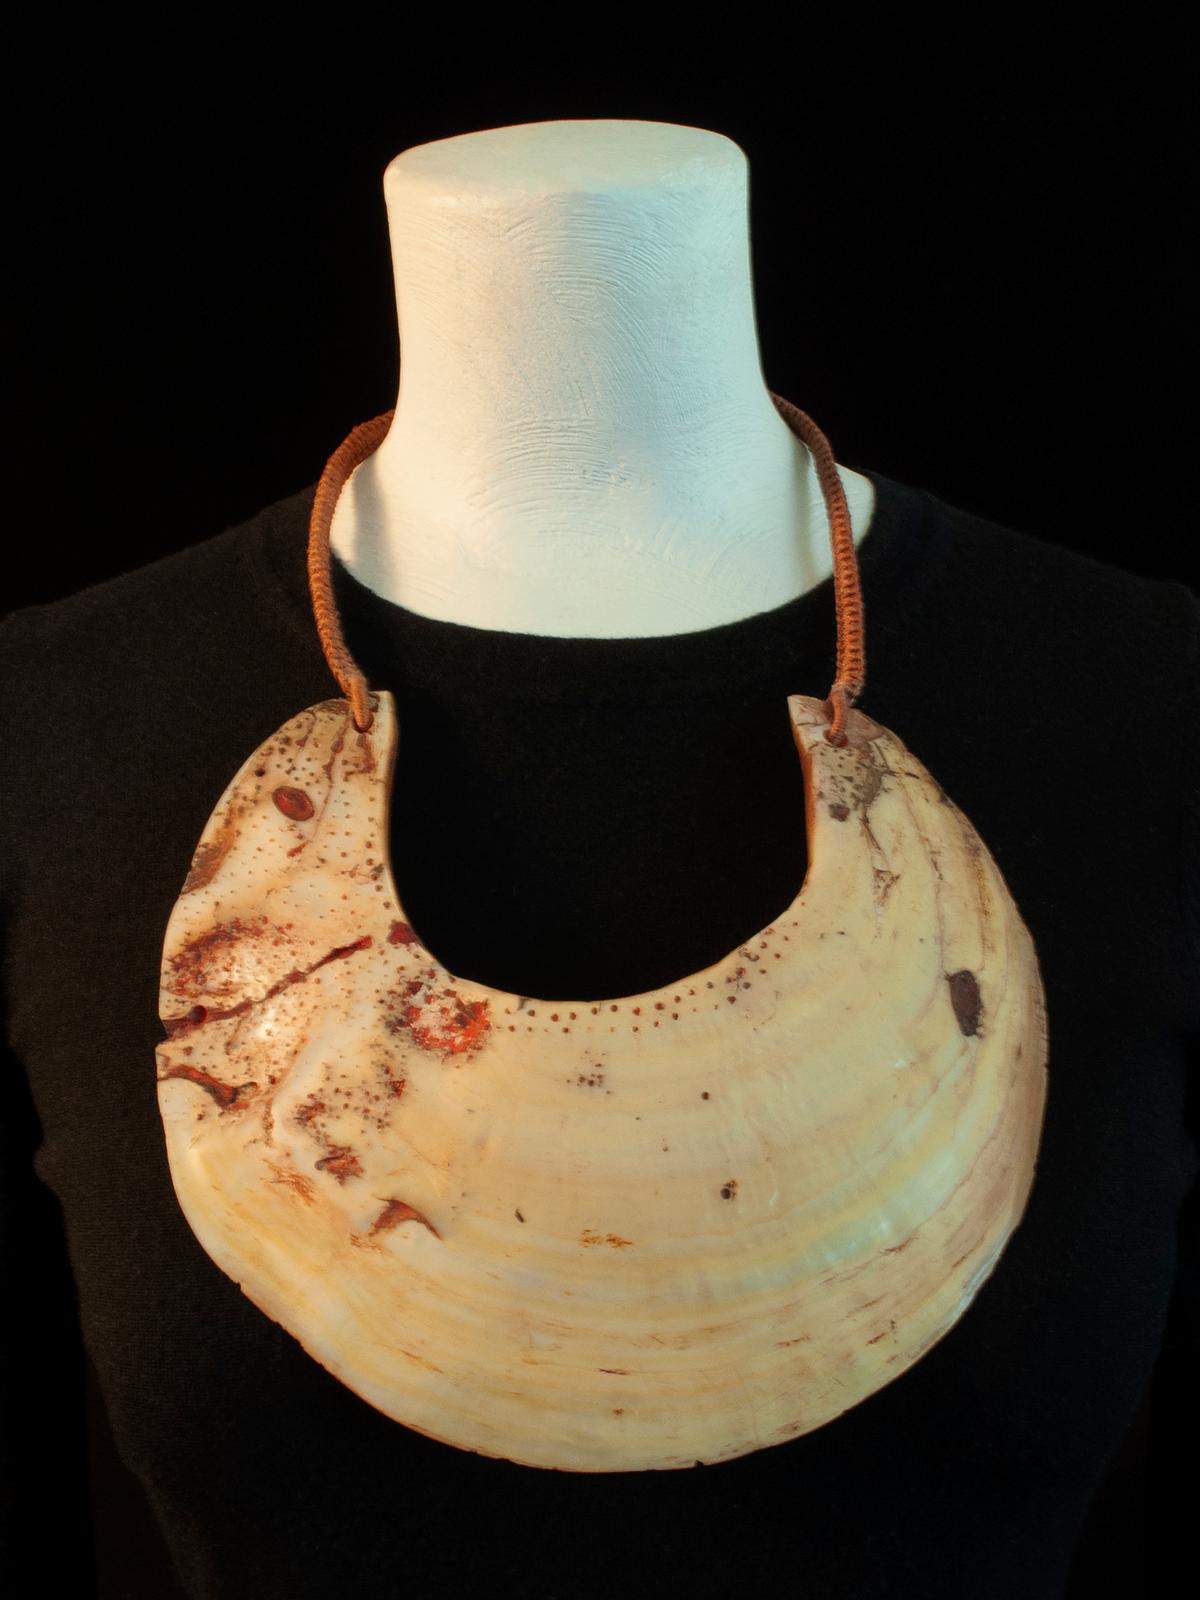 Pektorale Kina-Muschel-Halskette aus dem 20. Jahrhundert von einem unbekannten Juwelier

Kina-Muscheln wurden im westlichen Hochland von Papua-Neuguinea traditionell als Brustpanzer getragen, entweder mit einem Faserband oder an einer Plakette, die